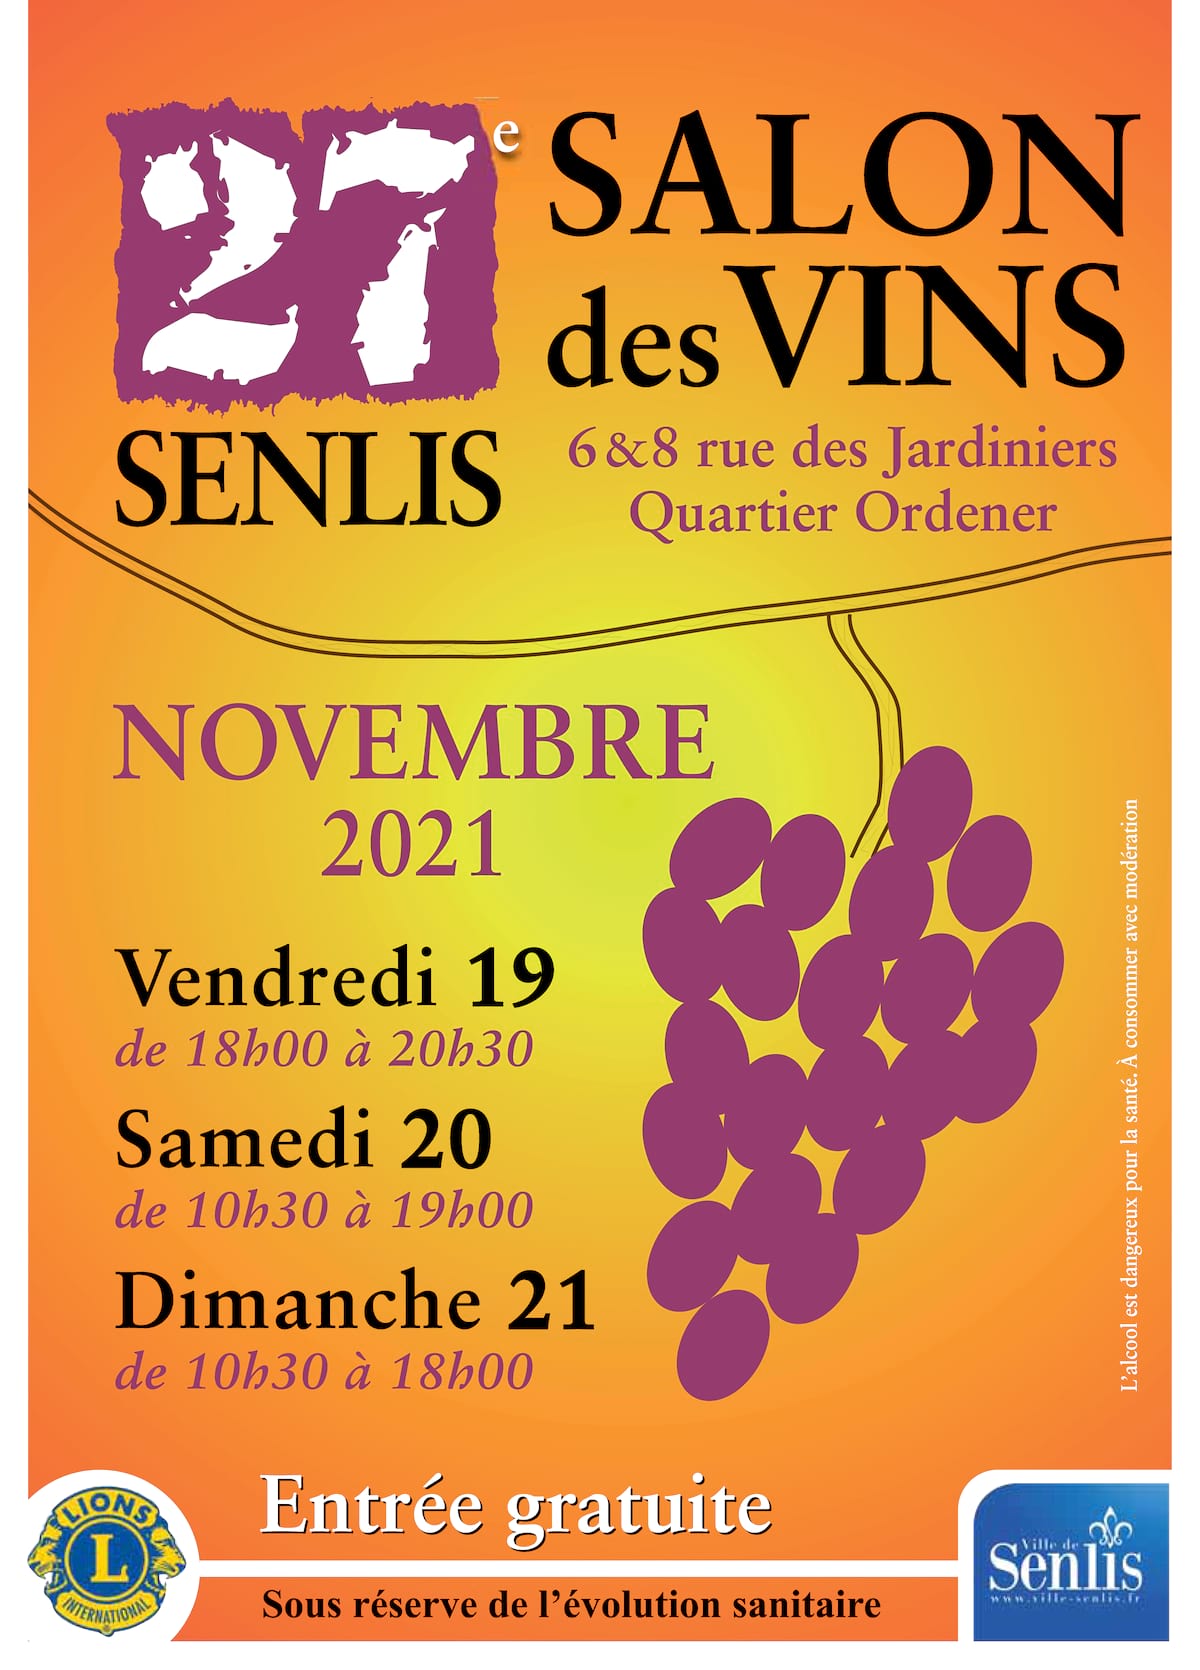 Salon des vins de Senlis